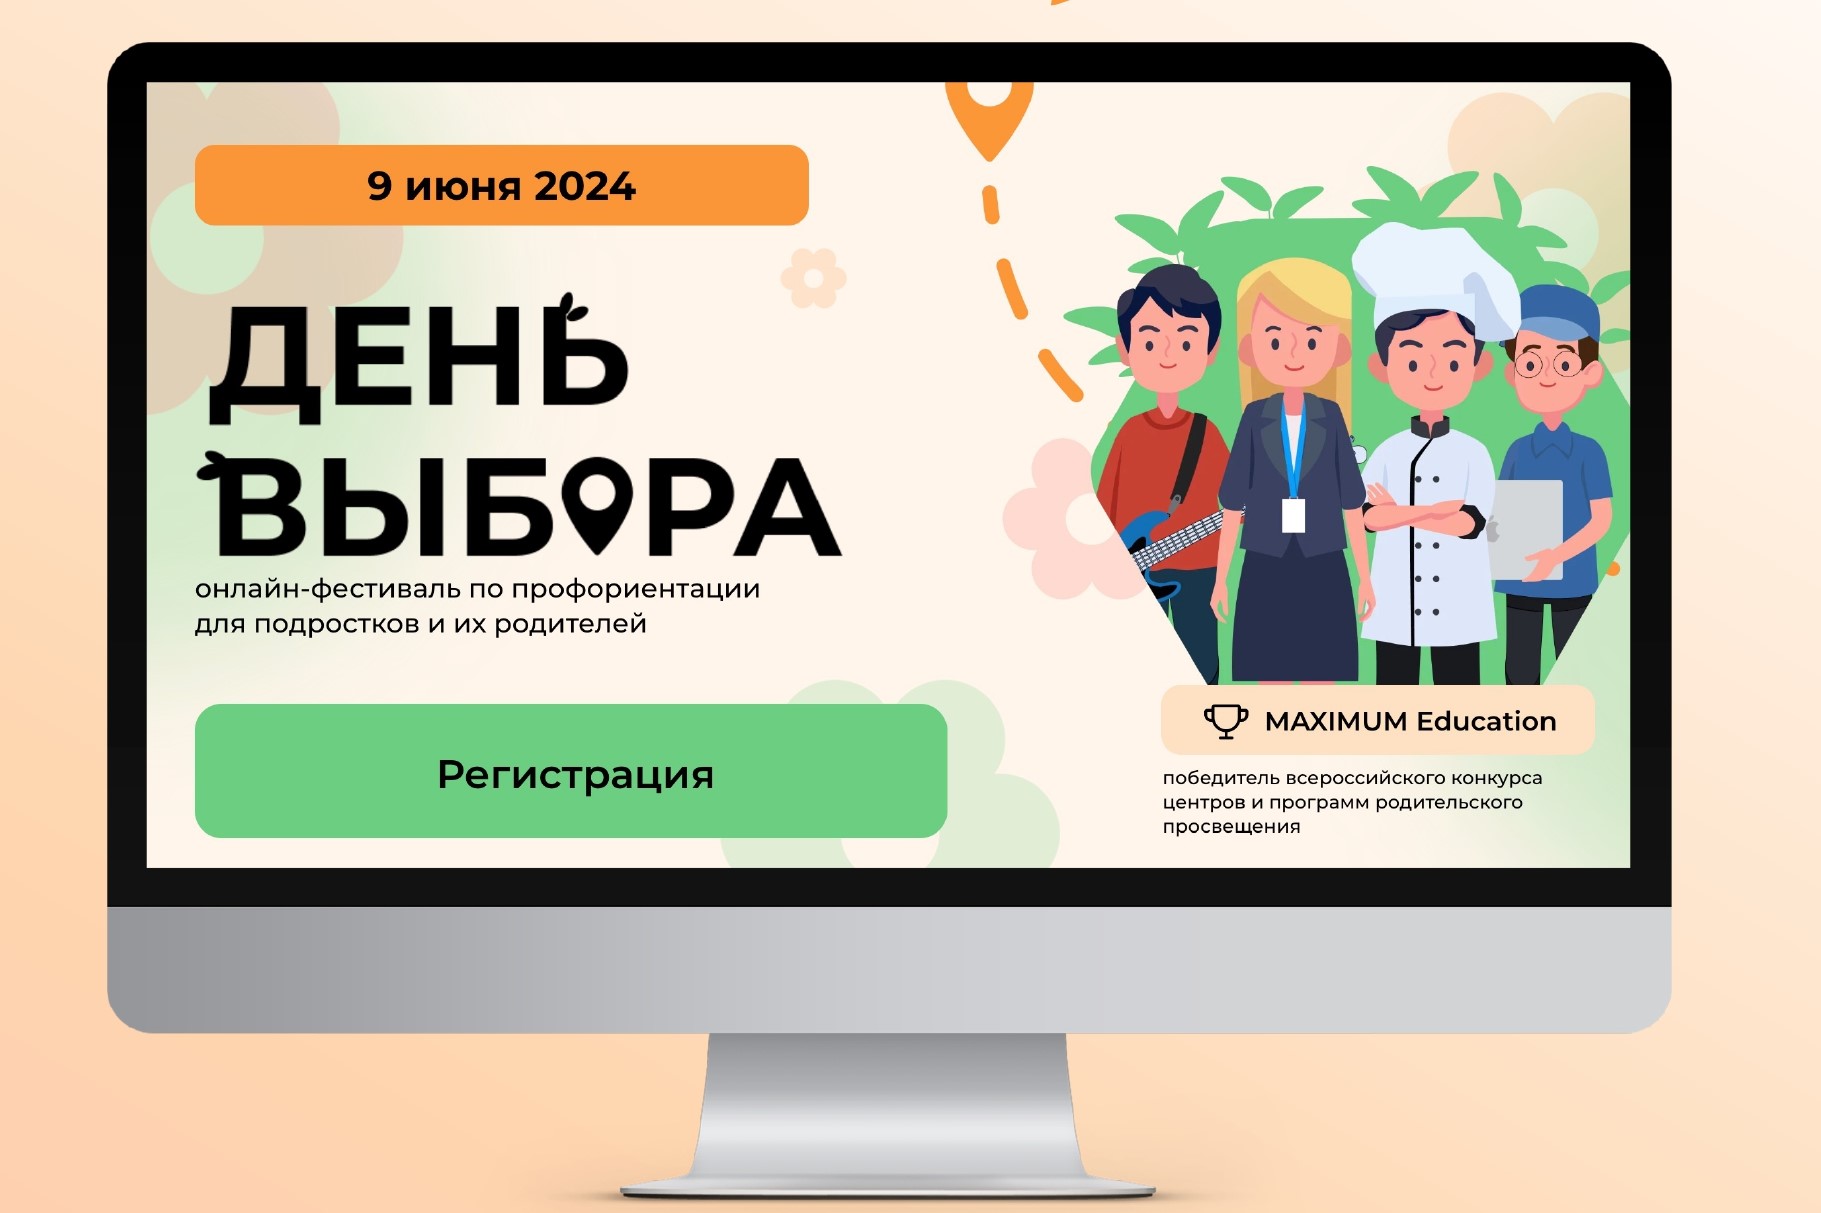 9 июня пройдет всероссийский онлайн-фестиваль по профориентации «День Выбора»